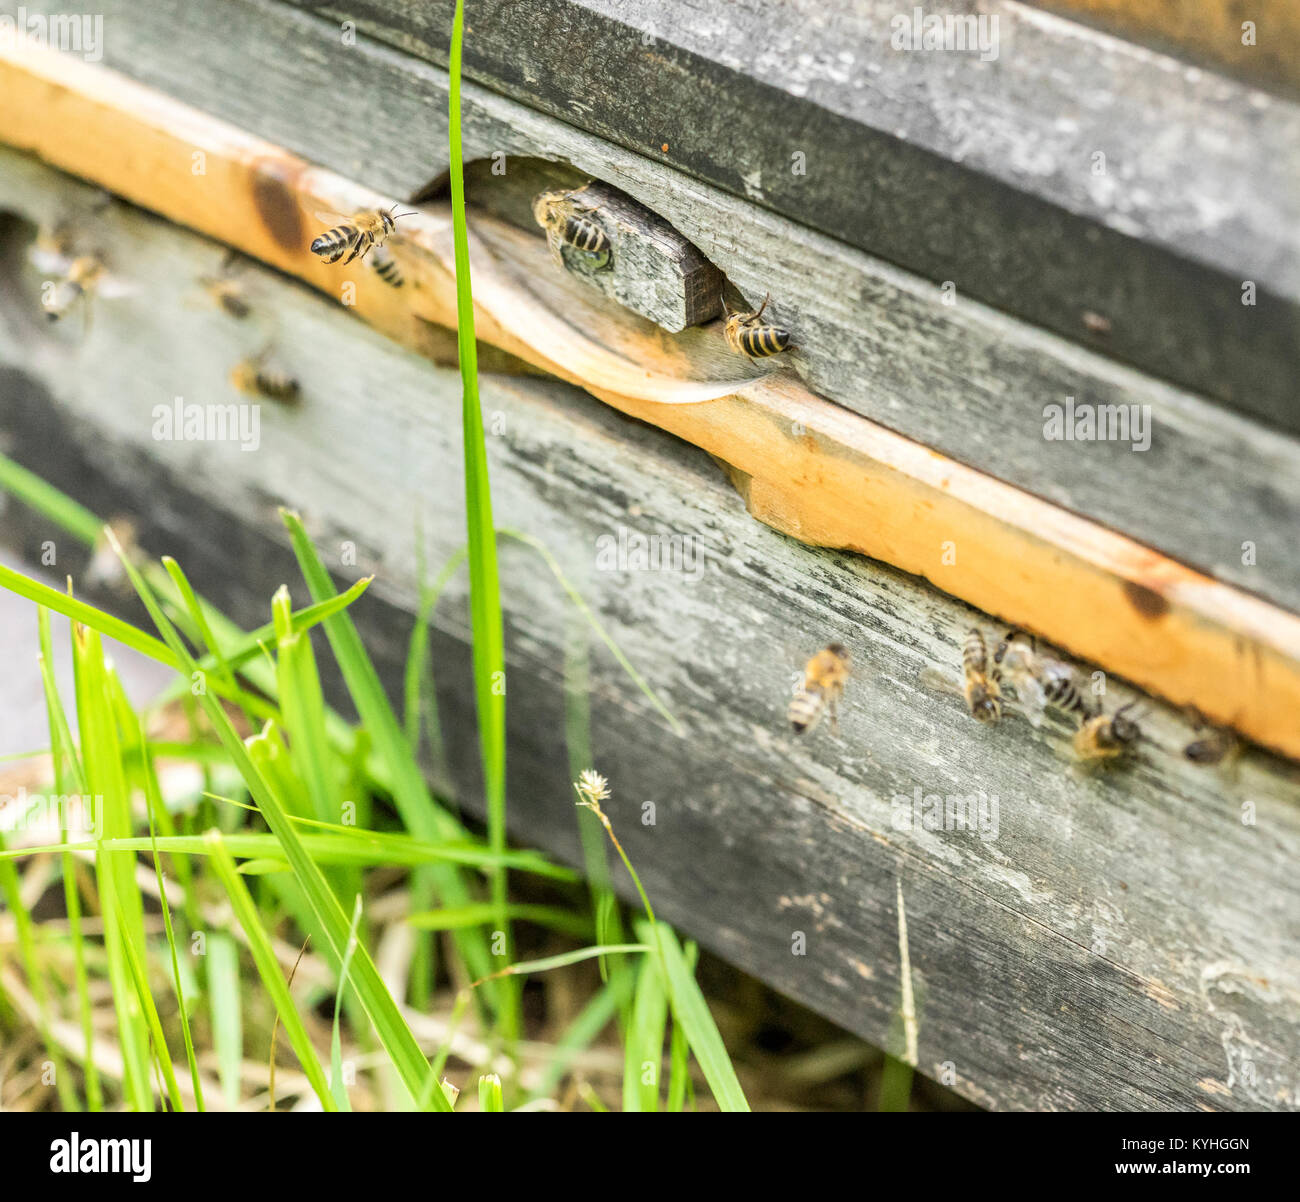 Eingang eines Bienenstockes mit vielen Bienen im sonnigen Ambiente Stockfoto